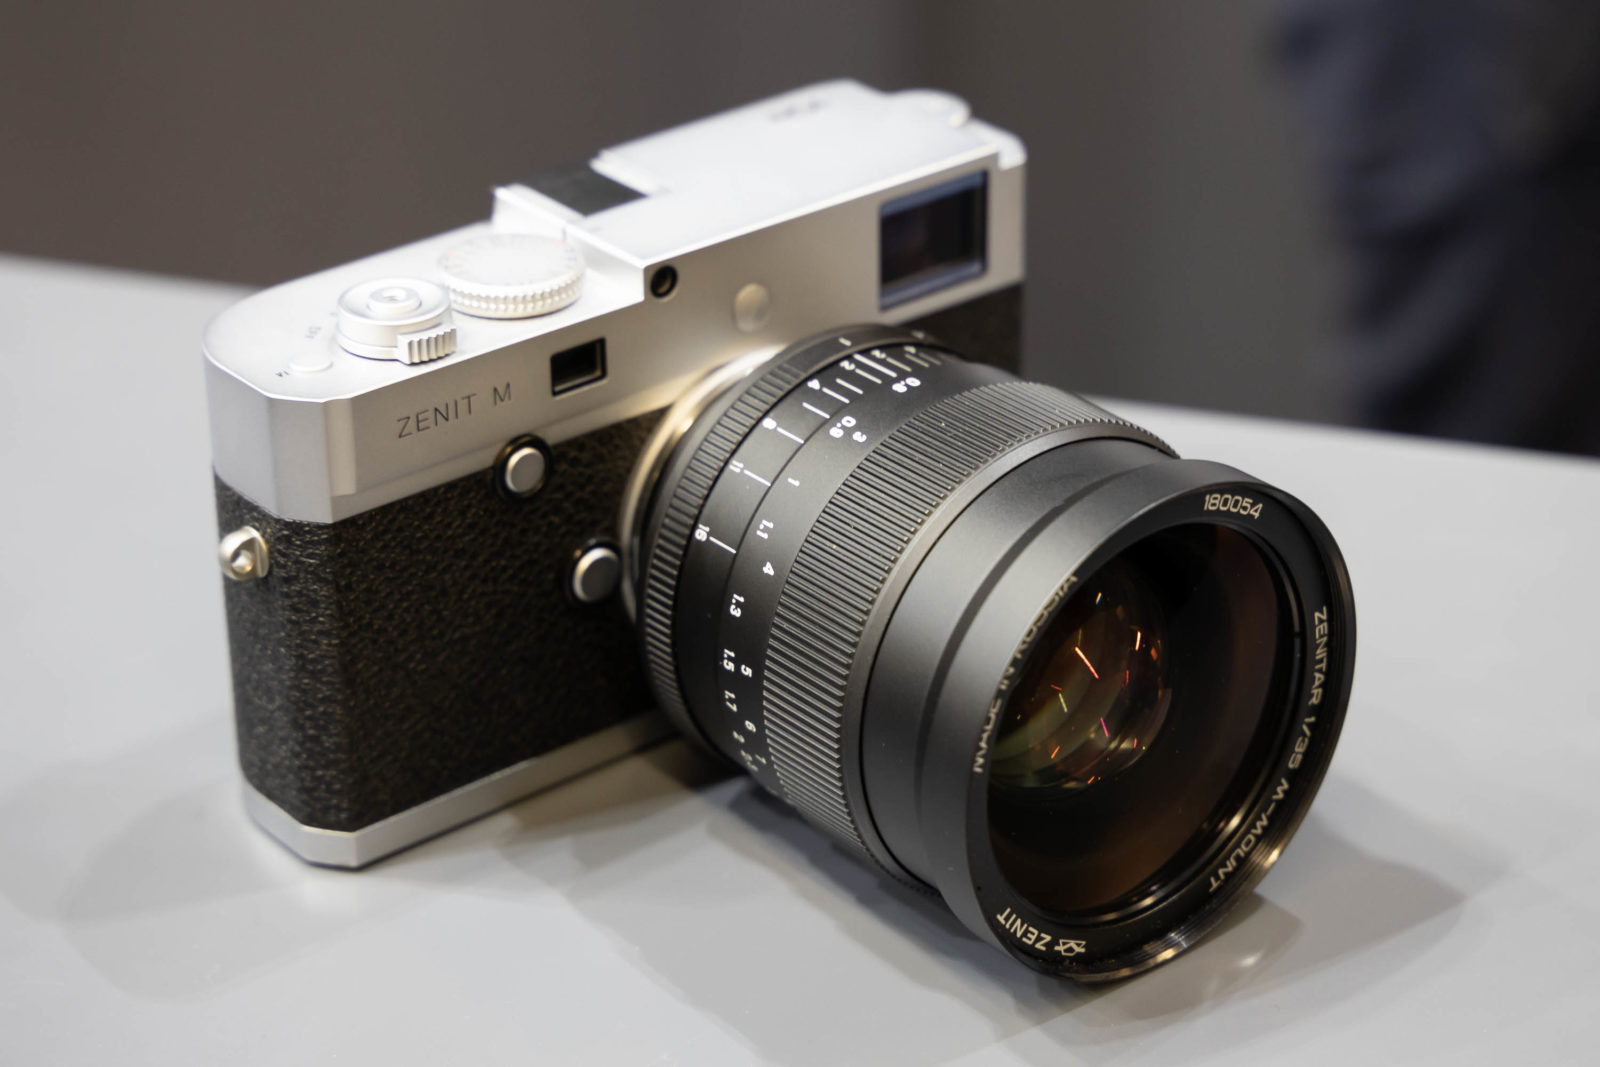 Zenit e Leica presentano la Zenit M, una nuova full frame digitale e telemetro